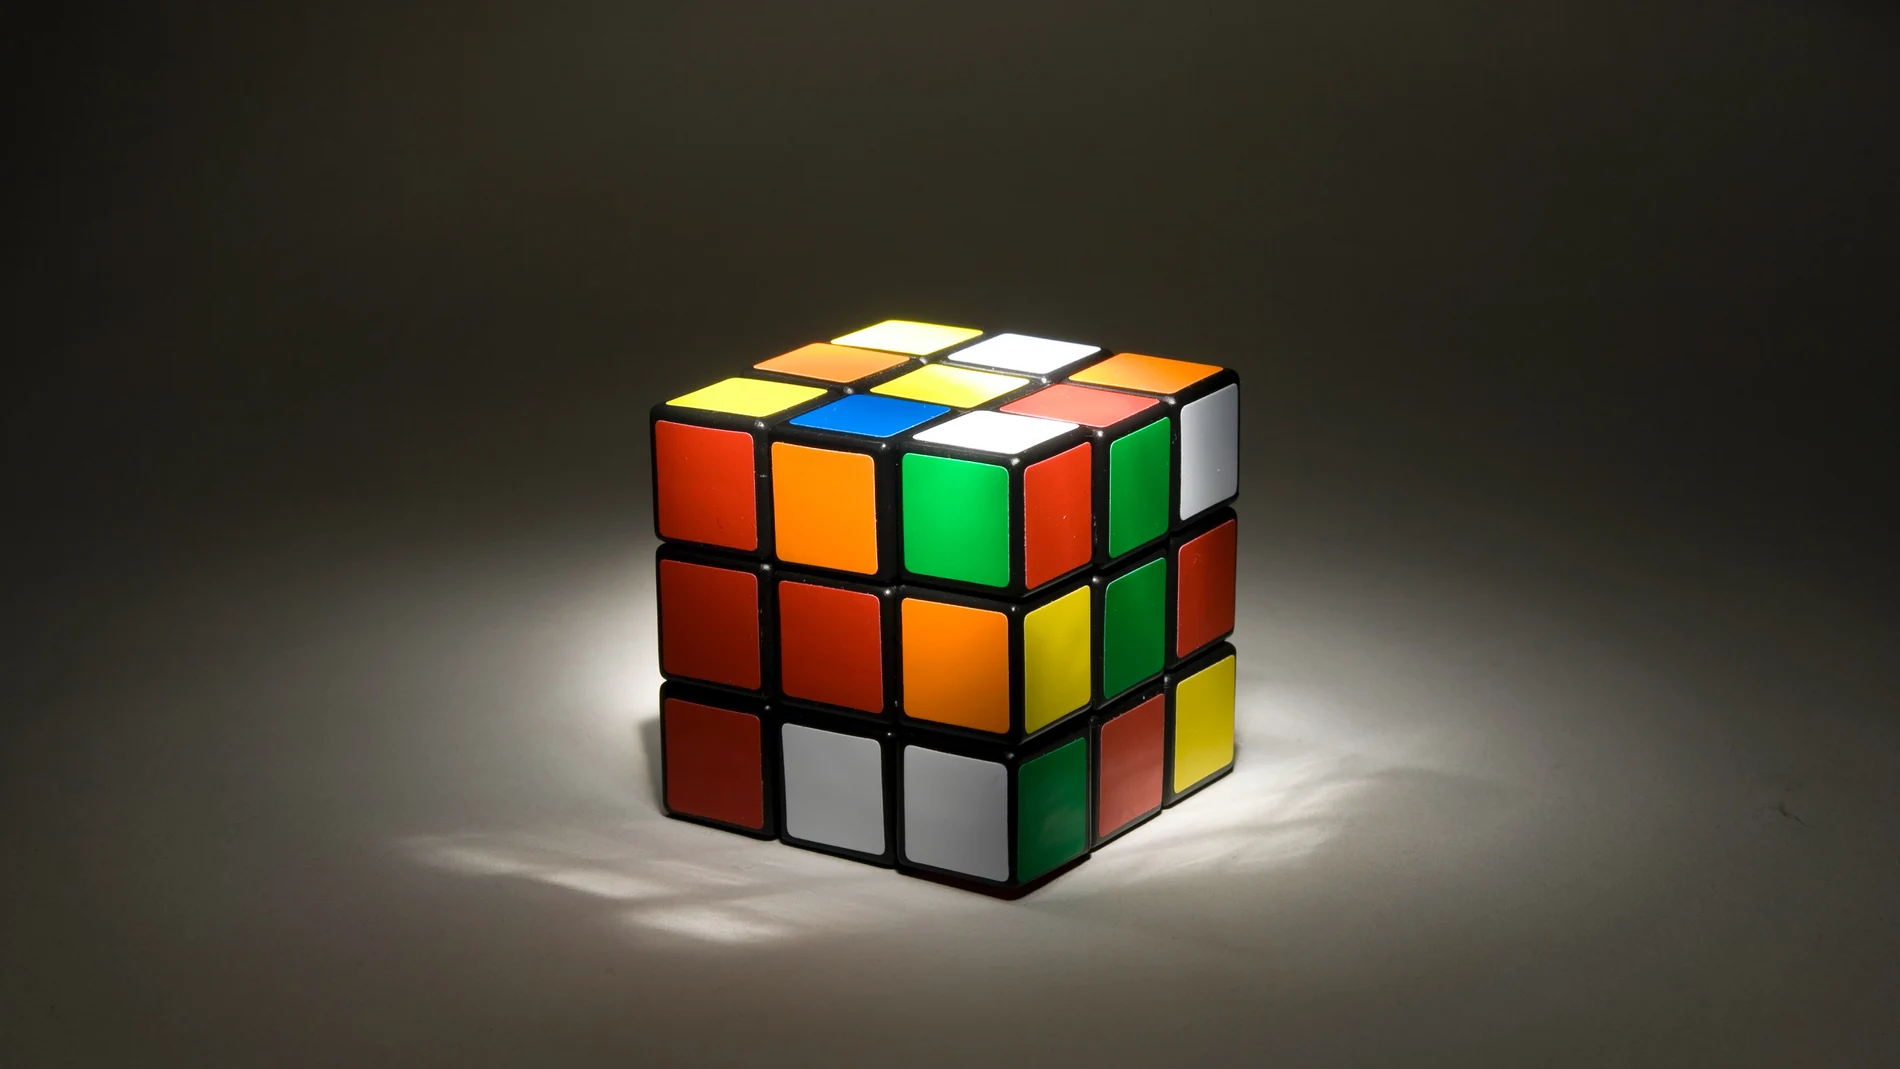 El cubo rubik vuelve a estar de moda: así se resuelve uno de los juegos más famosos del mundo